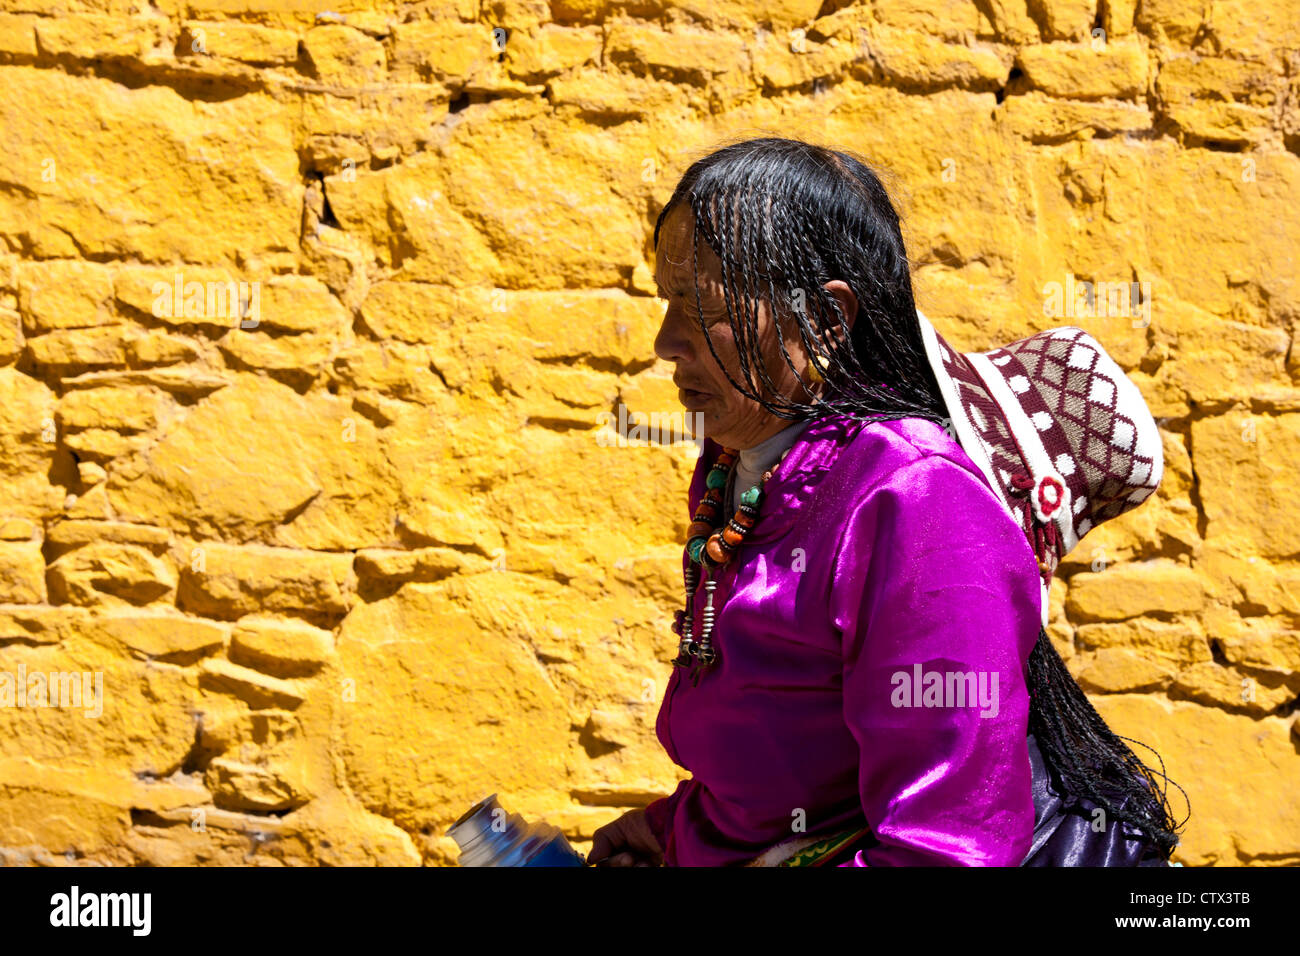 Una mujer tibetana que vestía ropa tradicional está pasando una pared amarilla, Tibet, Foto de stock